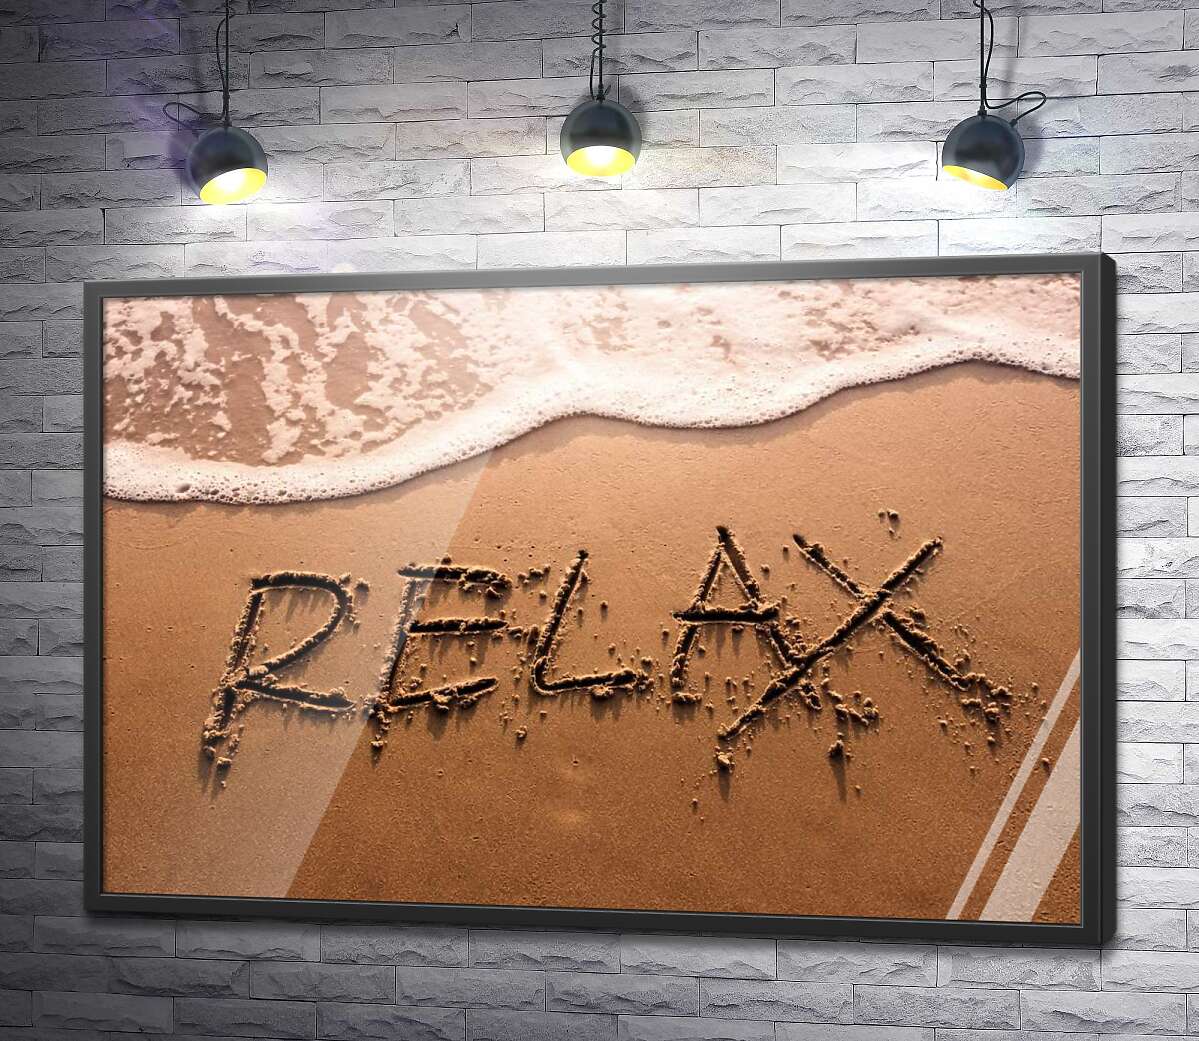 постер Надпись "RELAX" смывает волной